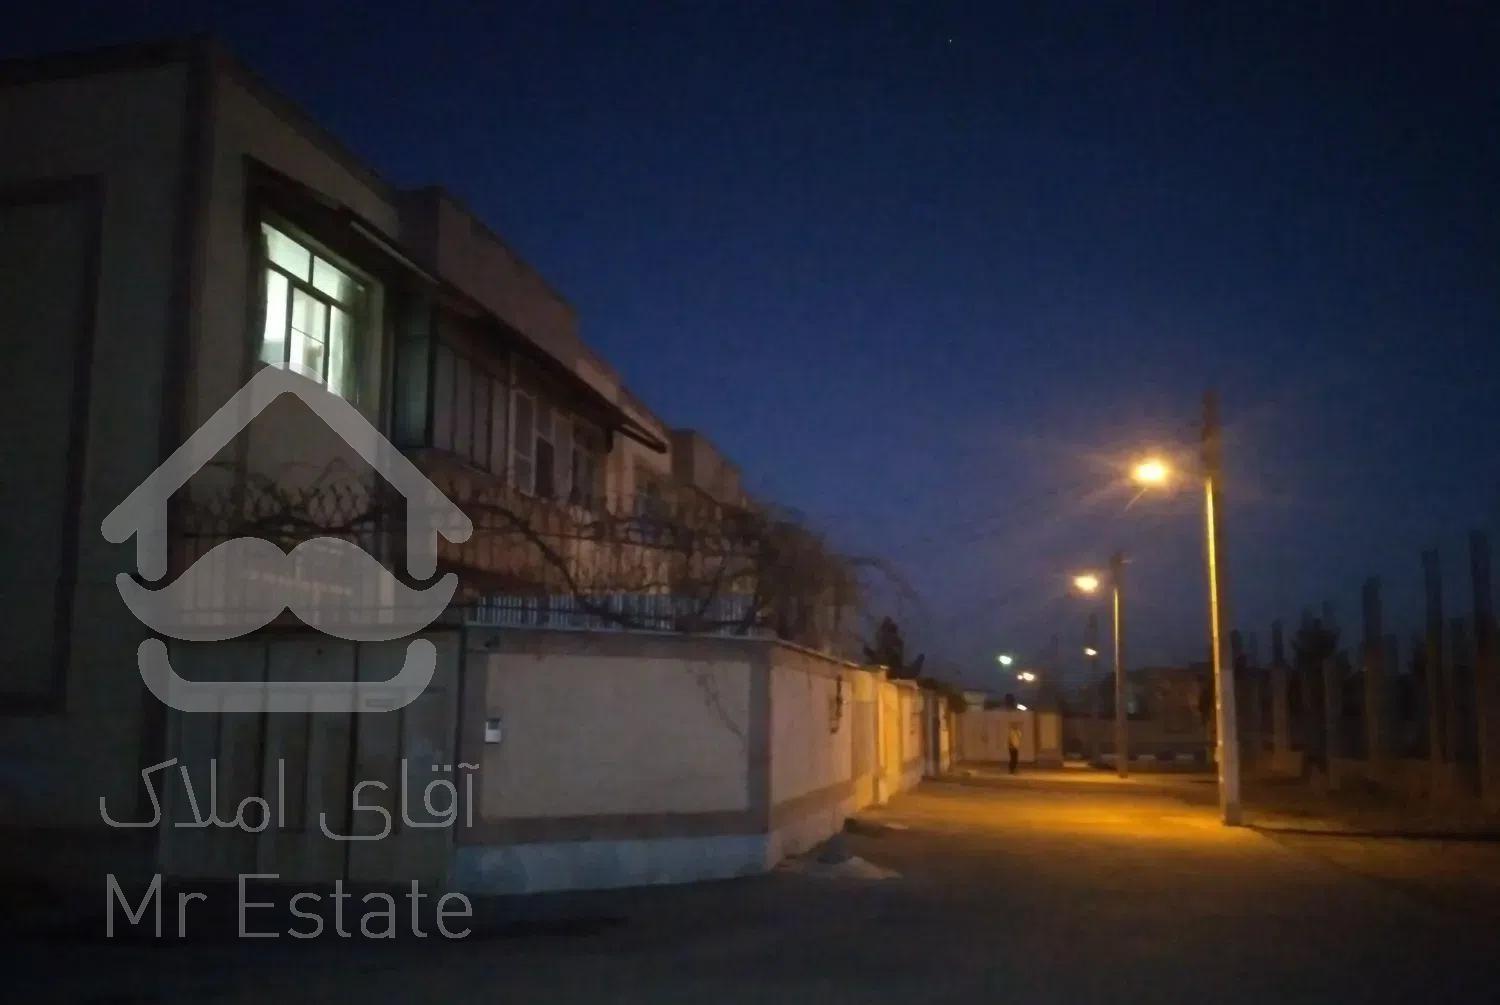 فروش یک واحد آپارتمان در الله آباد